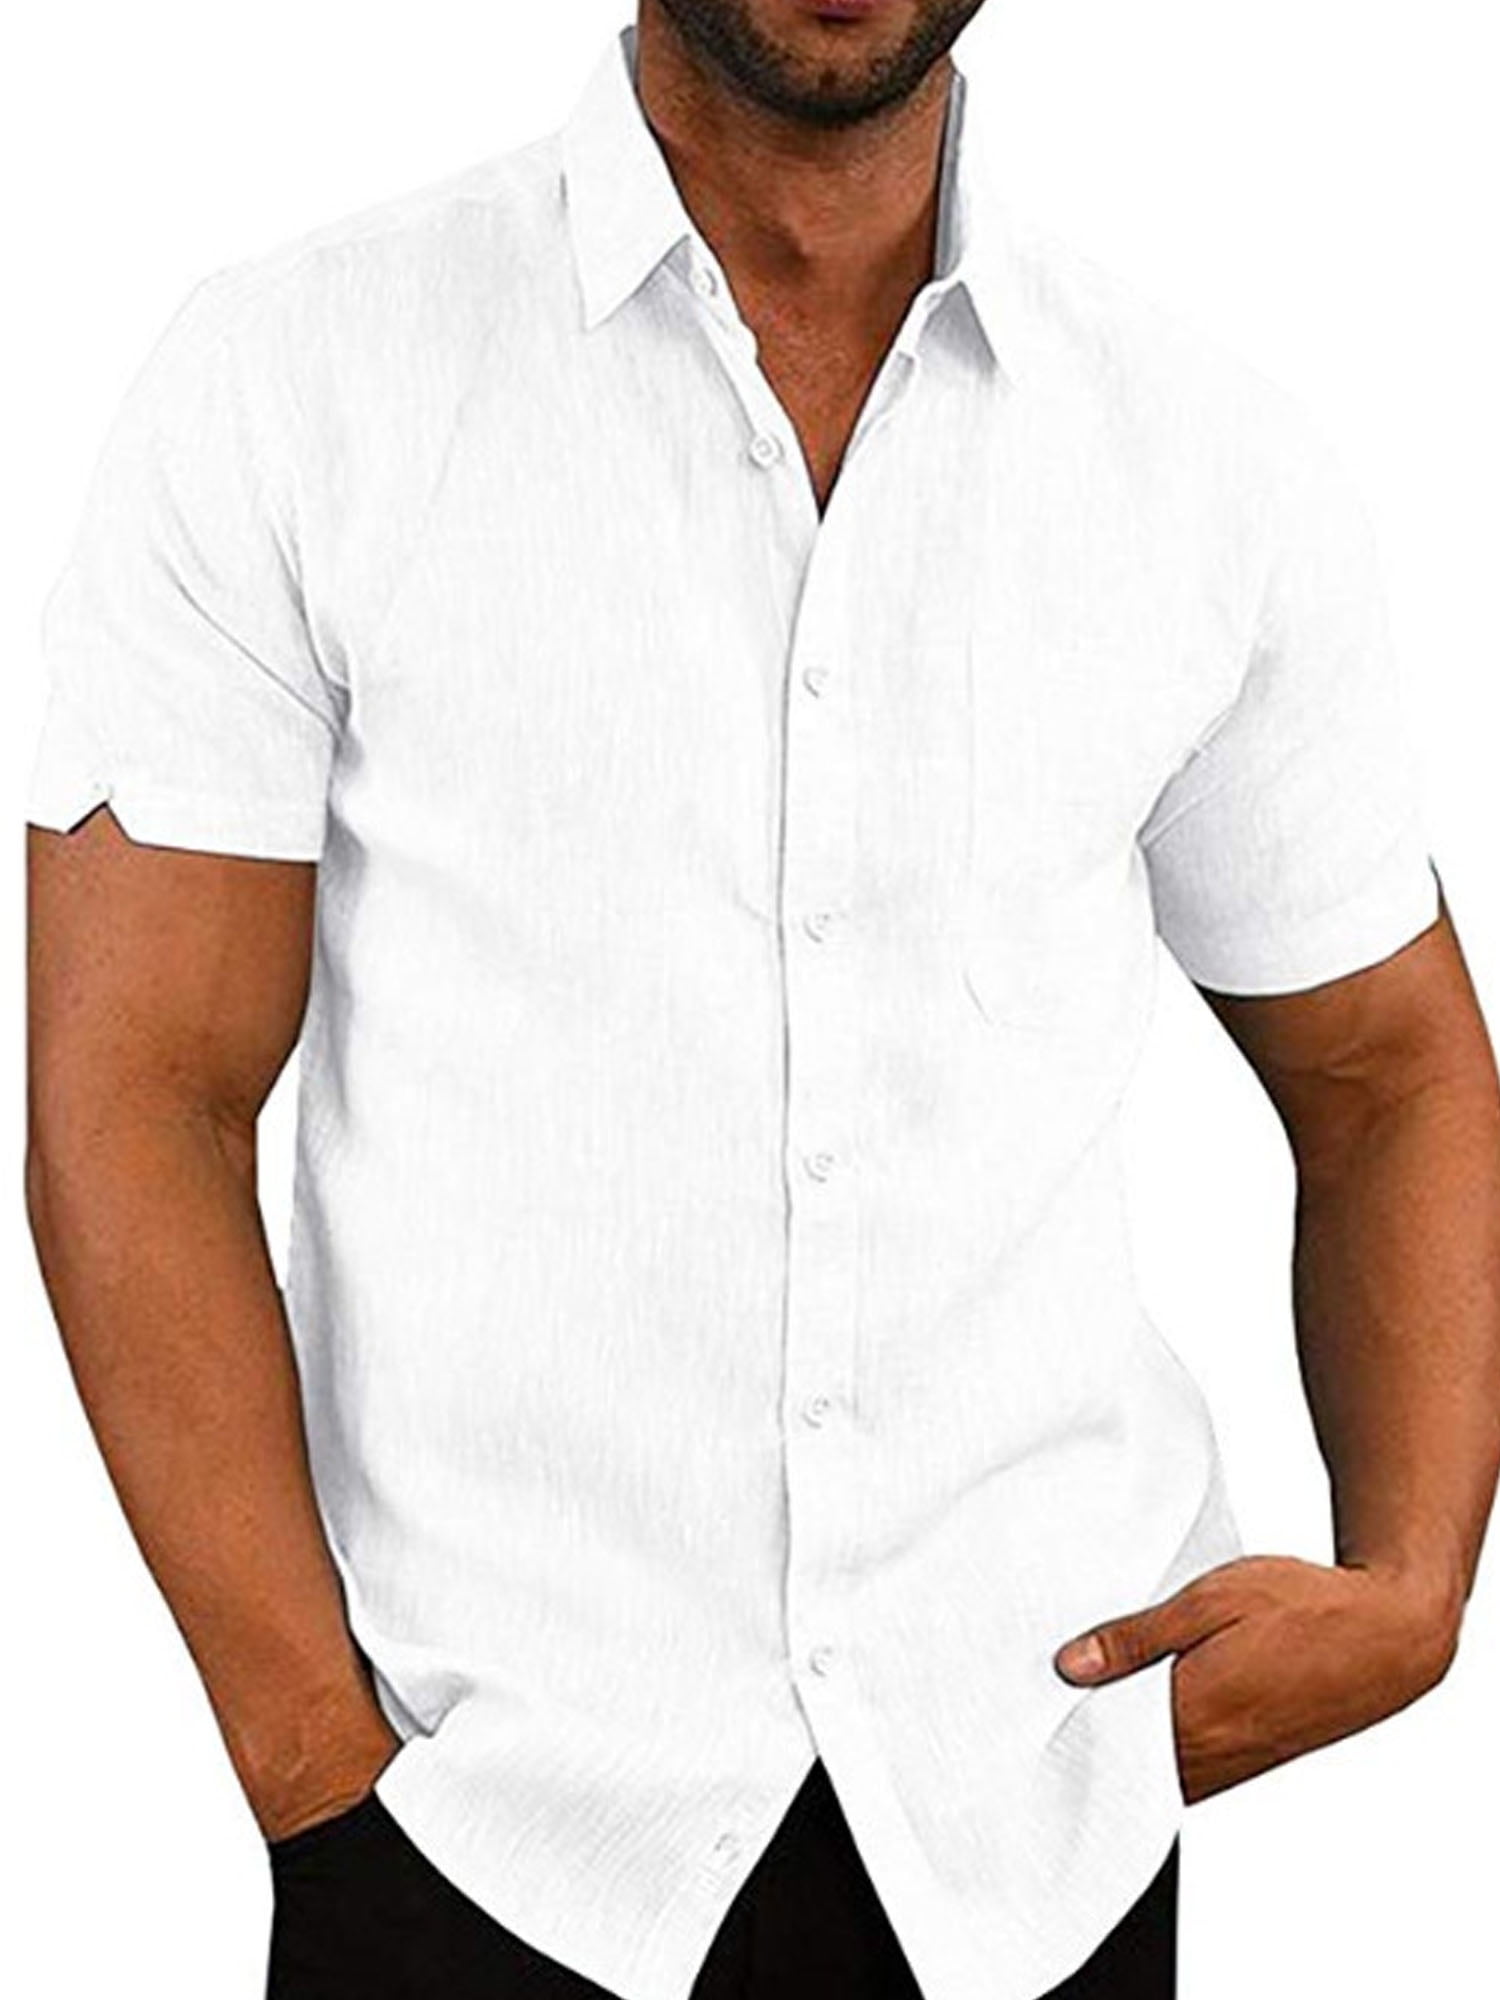 Mens Linen Shirt Dress Shirt White Shirt Wedding Linen 